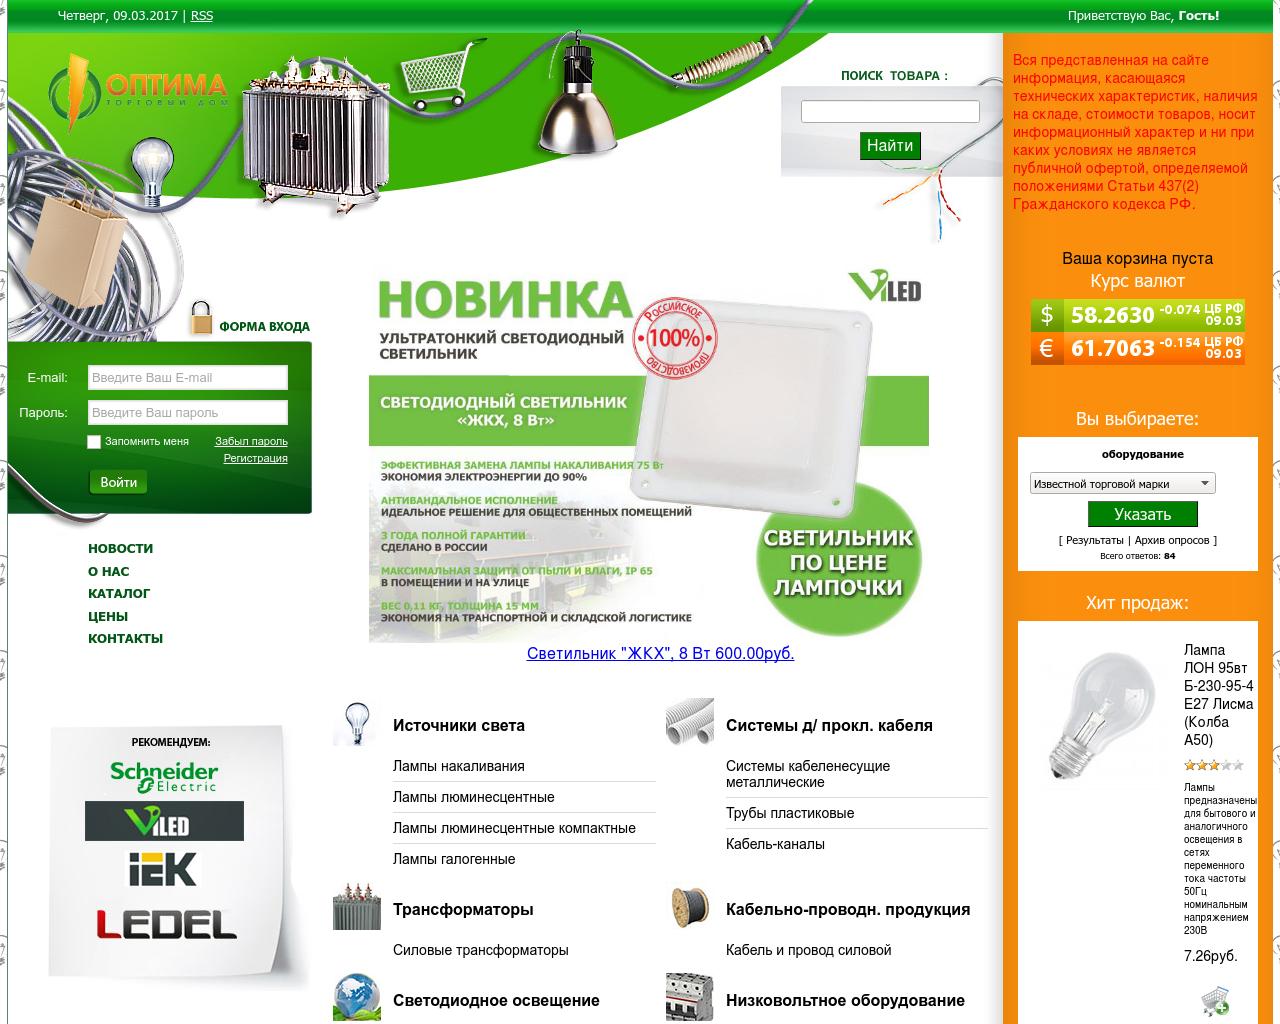 Изображение сайта tdoptima.ru в разрешении 1280x1024